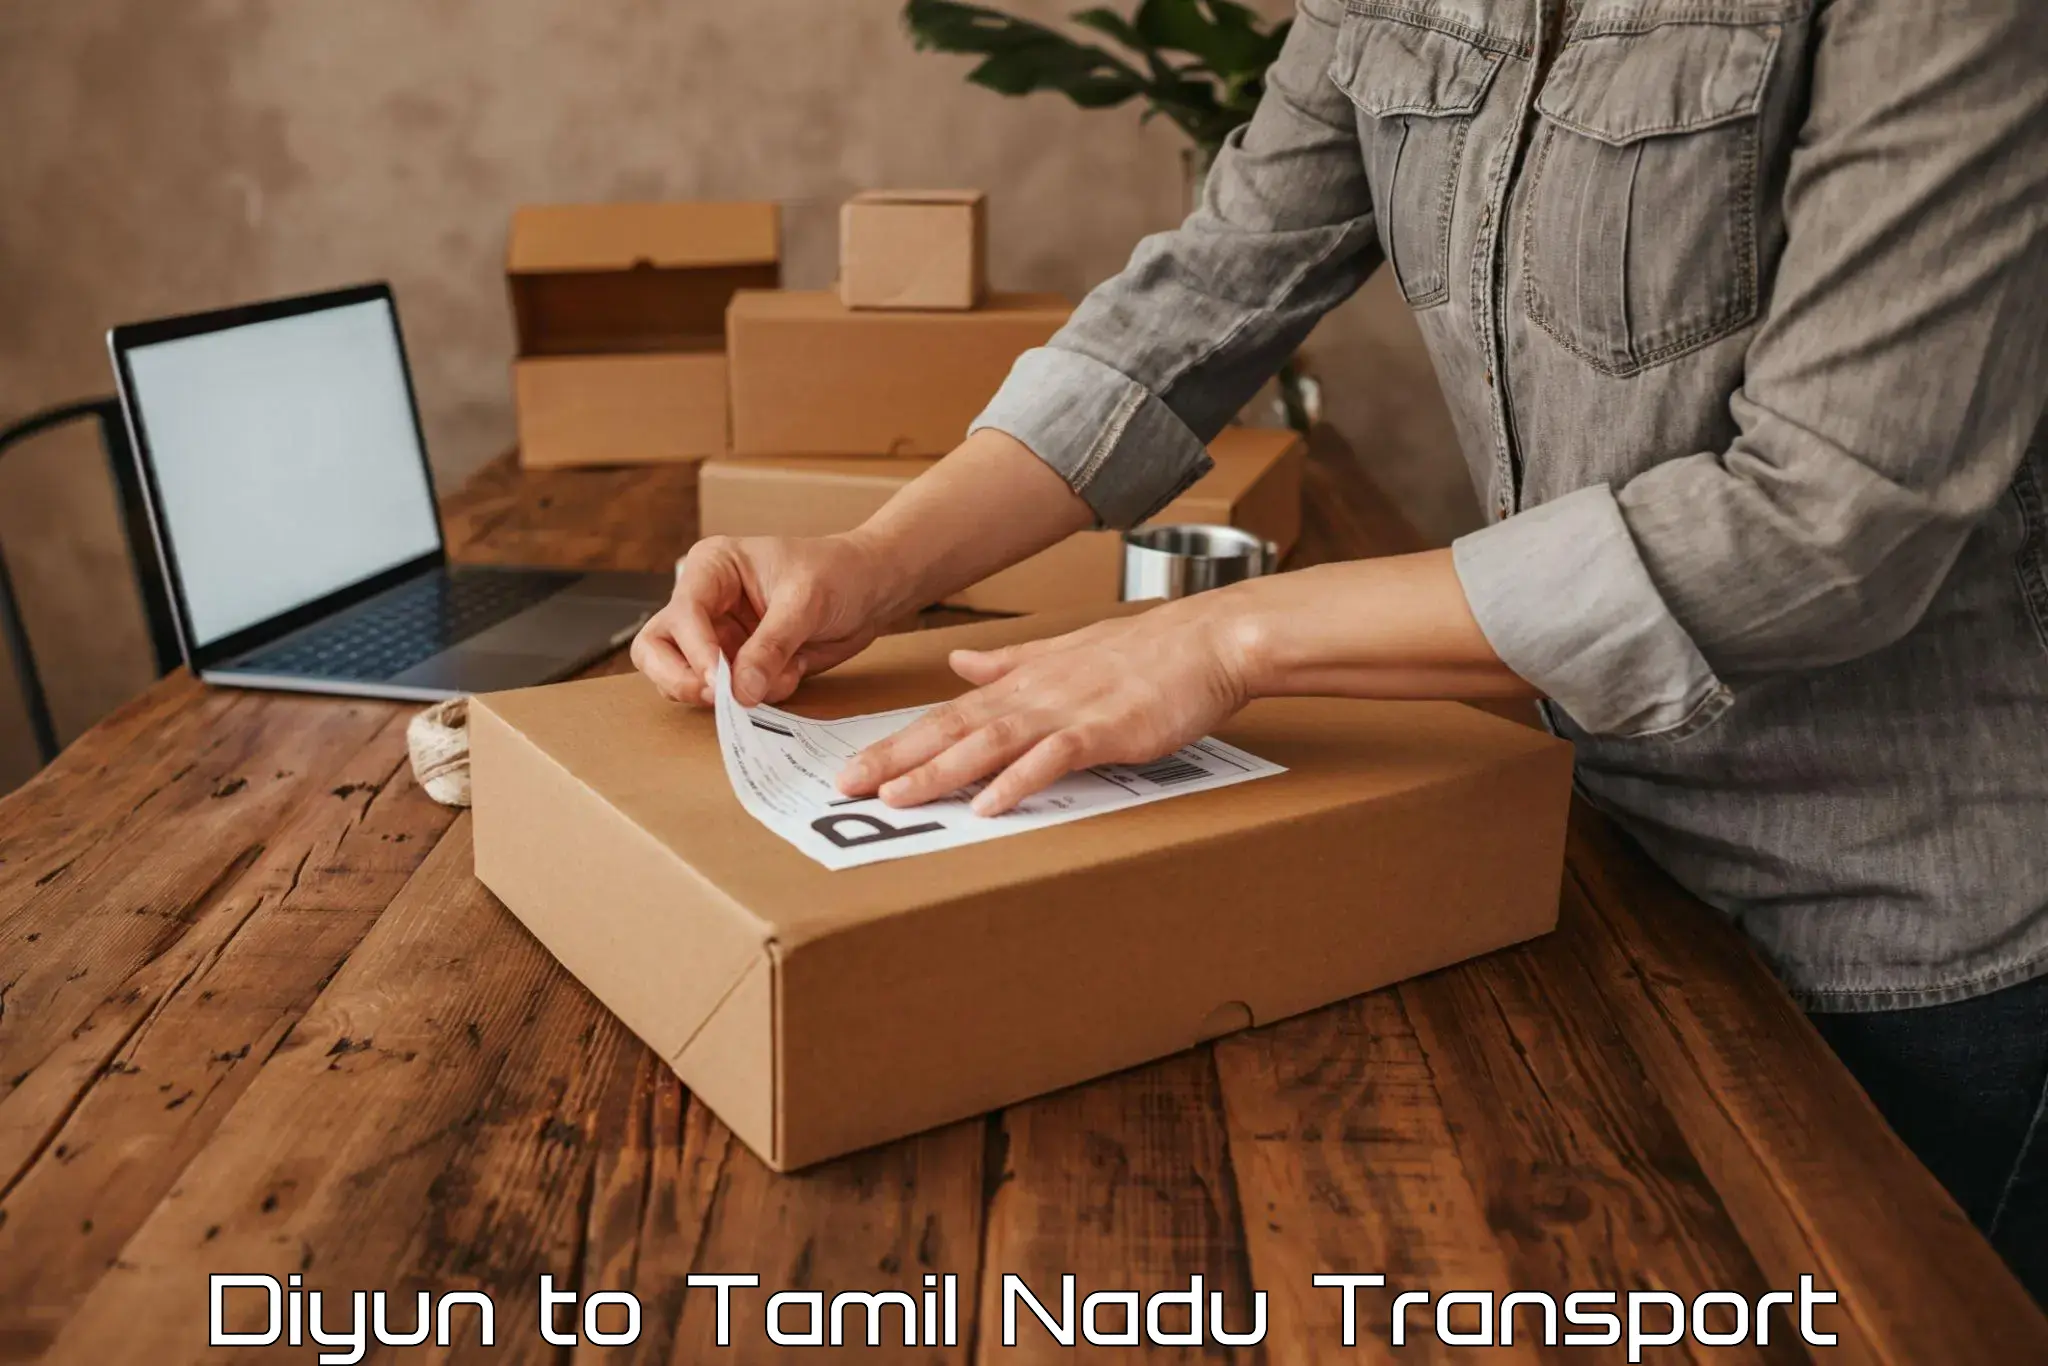 Daily transport service Diyun to Tirupattur